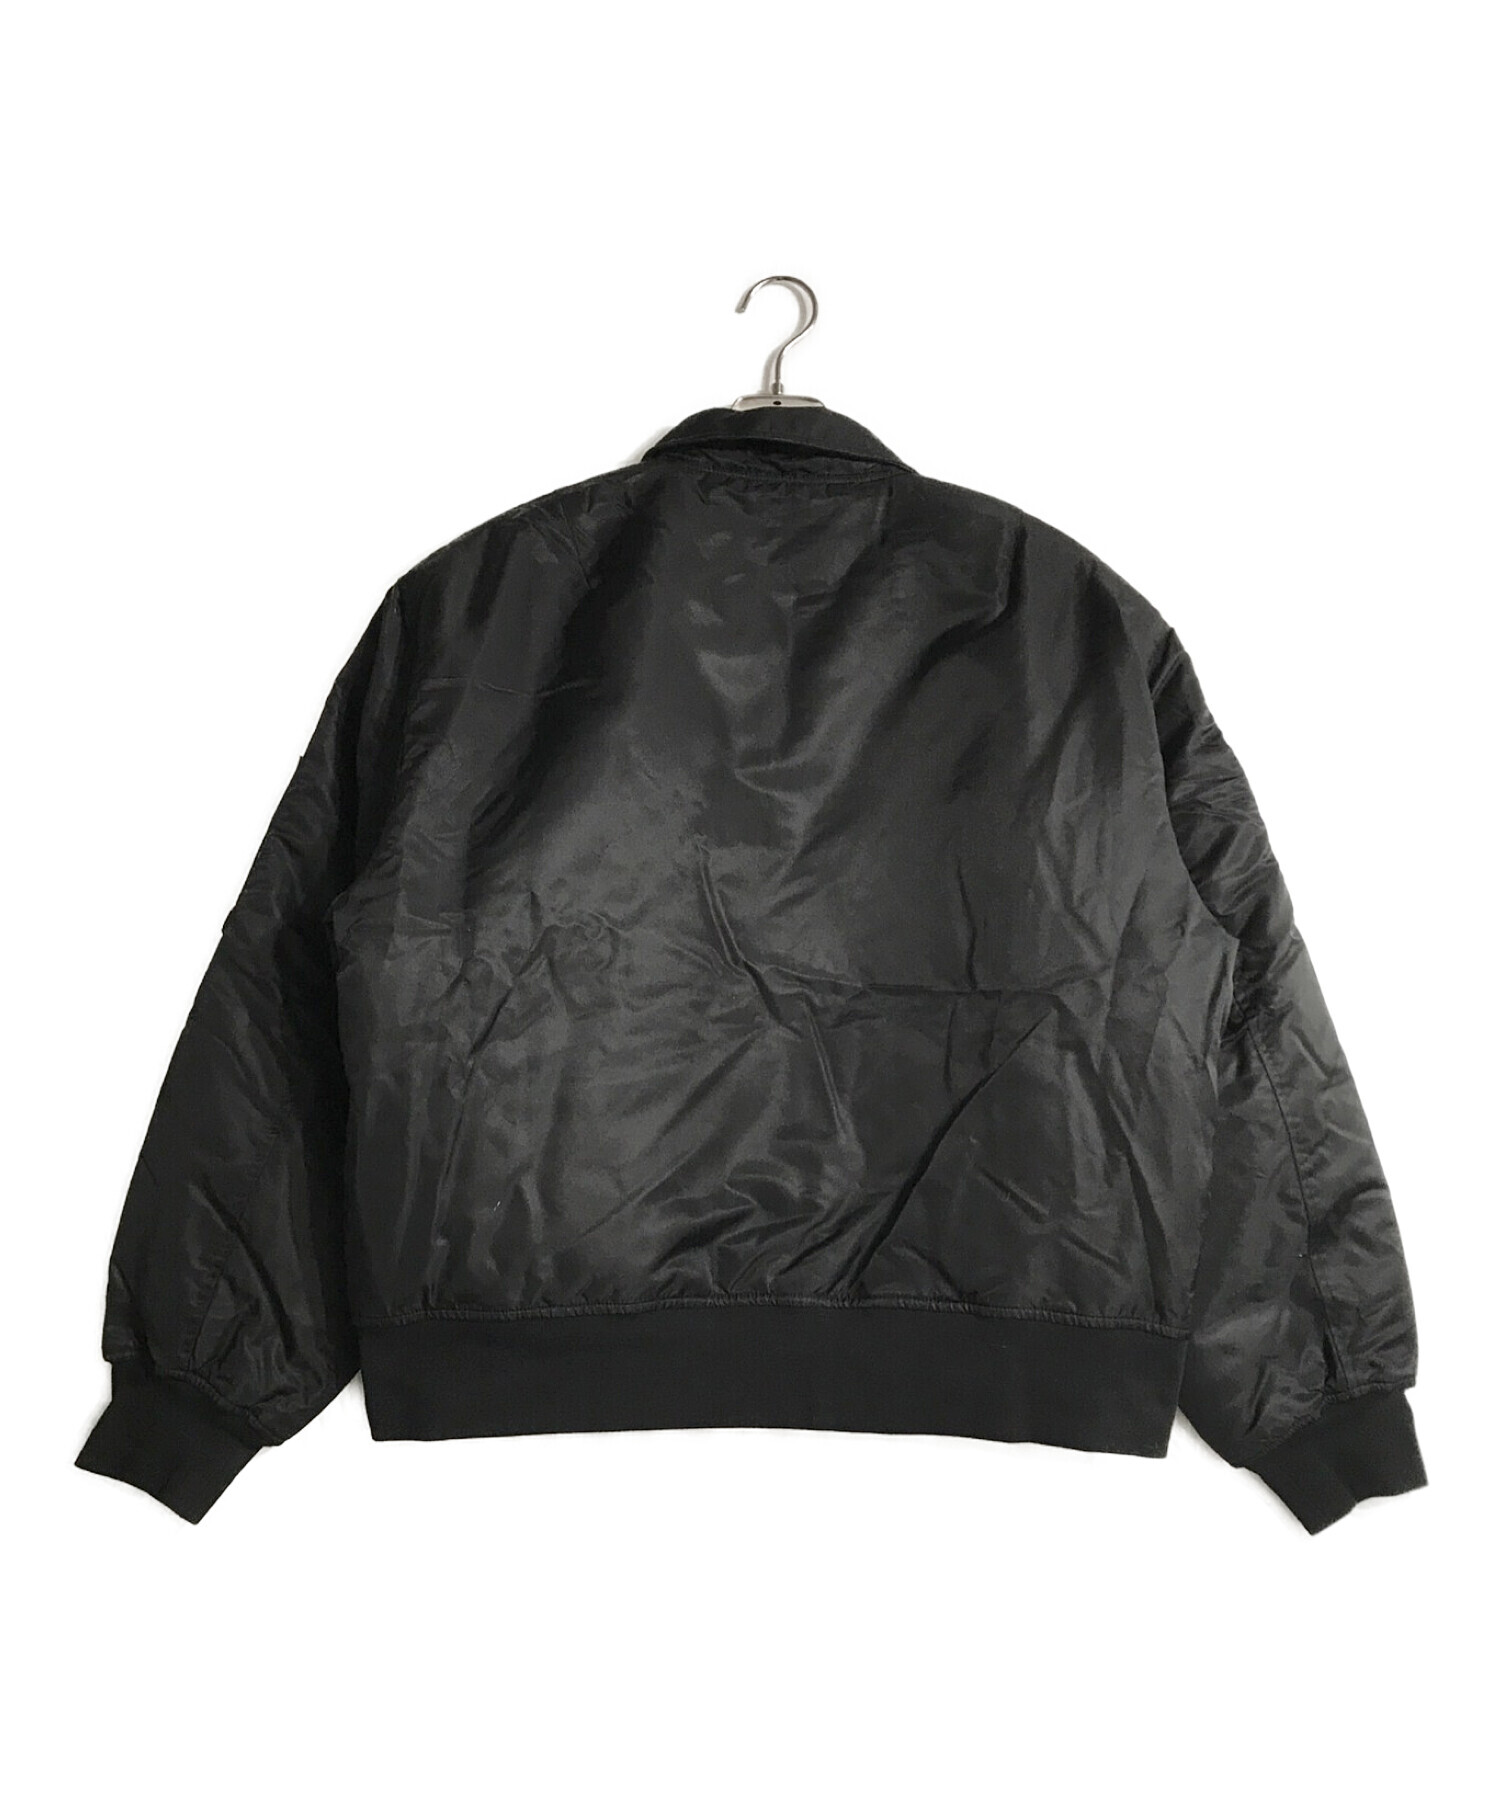 BADWAY (バッドウェイ) スタッズフライトジャケット ブラック サイズ:L 未使用品